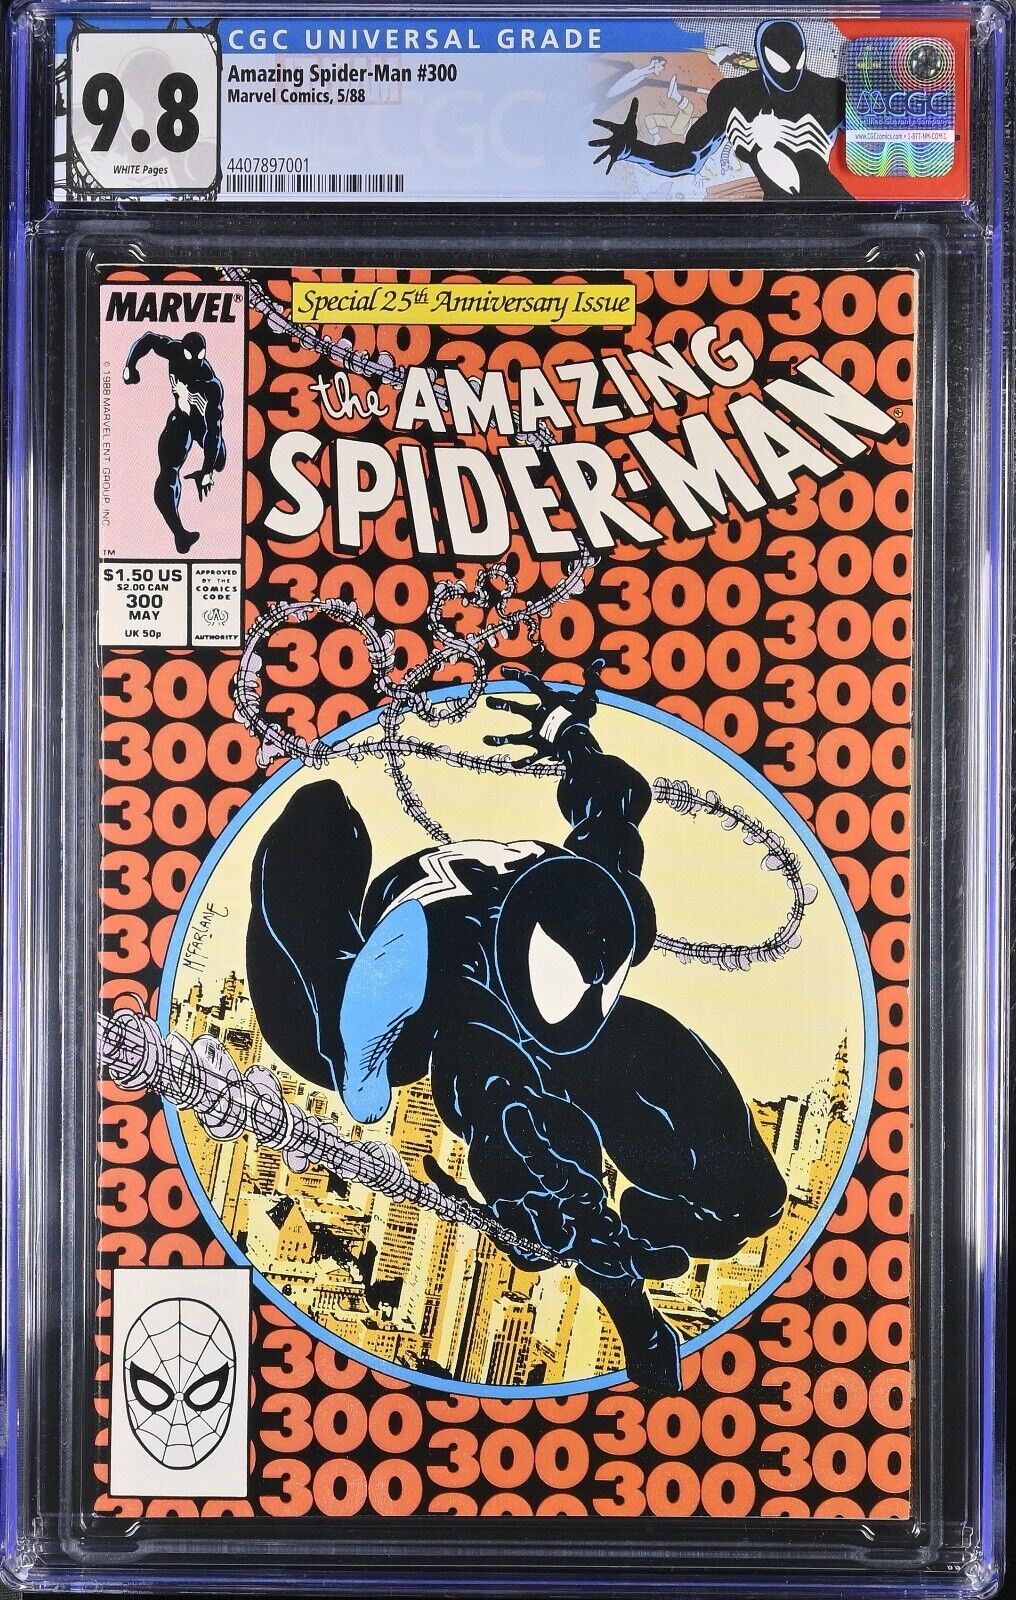 1988 The Amazing Spider-Man #300 CGC 9.8 Custom Label Cert# 4407897001